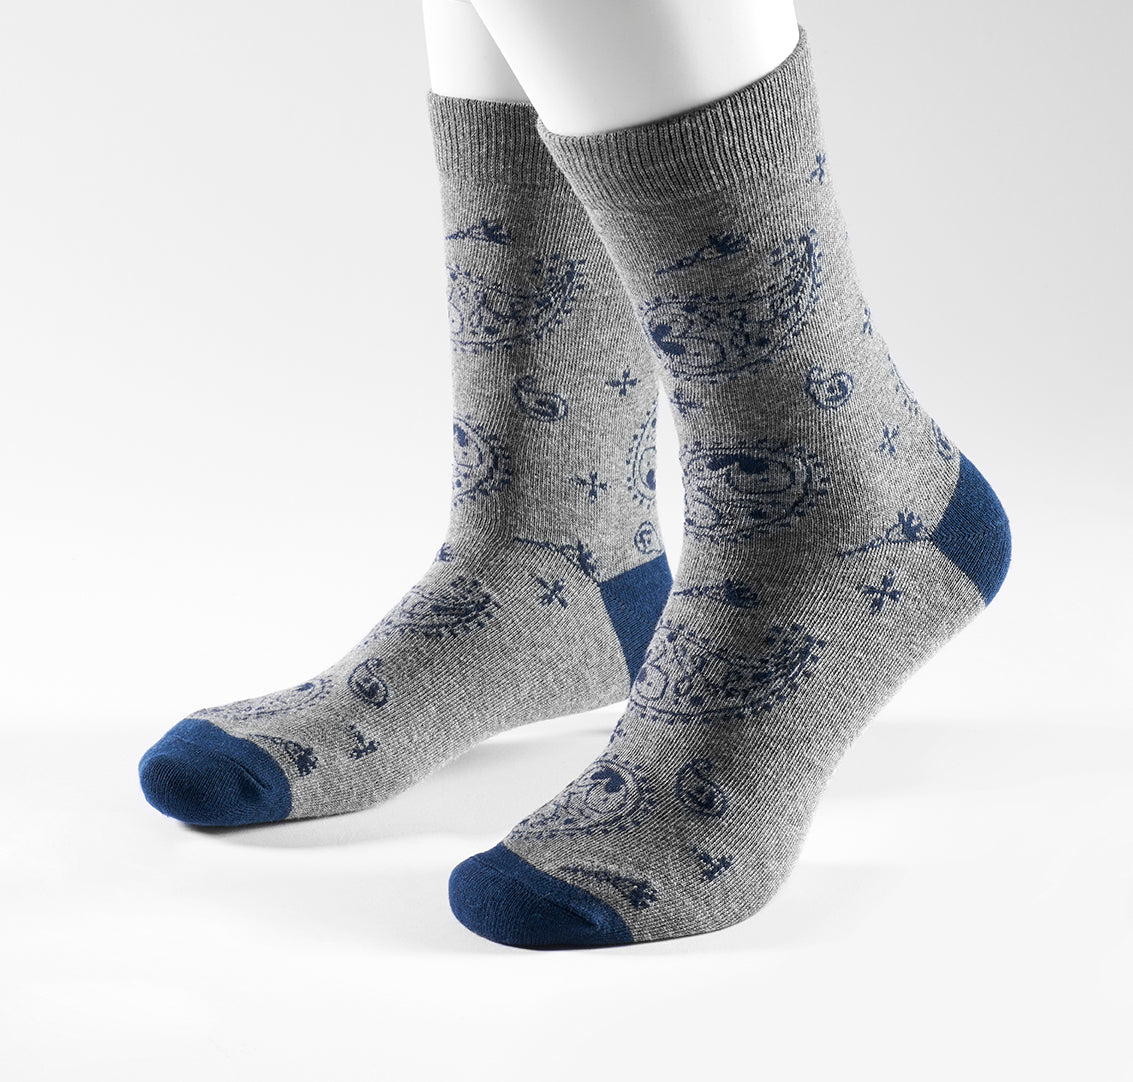 Socks 1 pair in paisley design